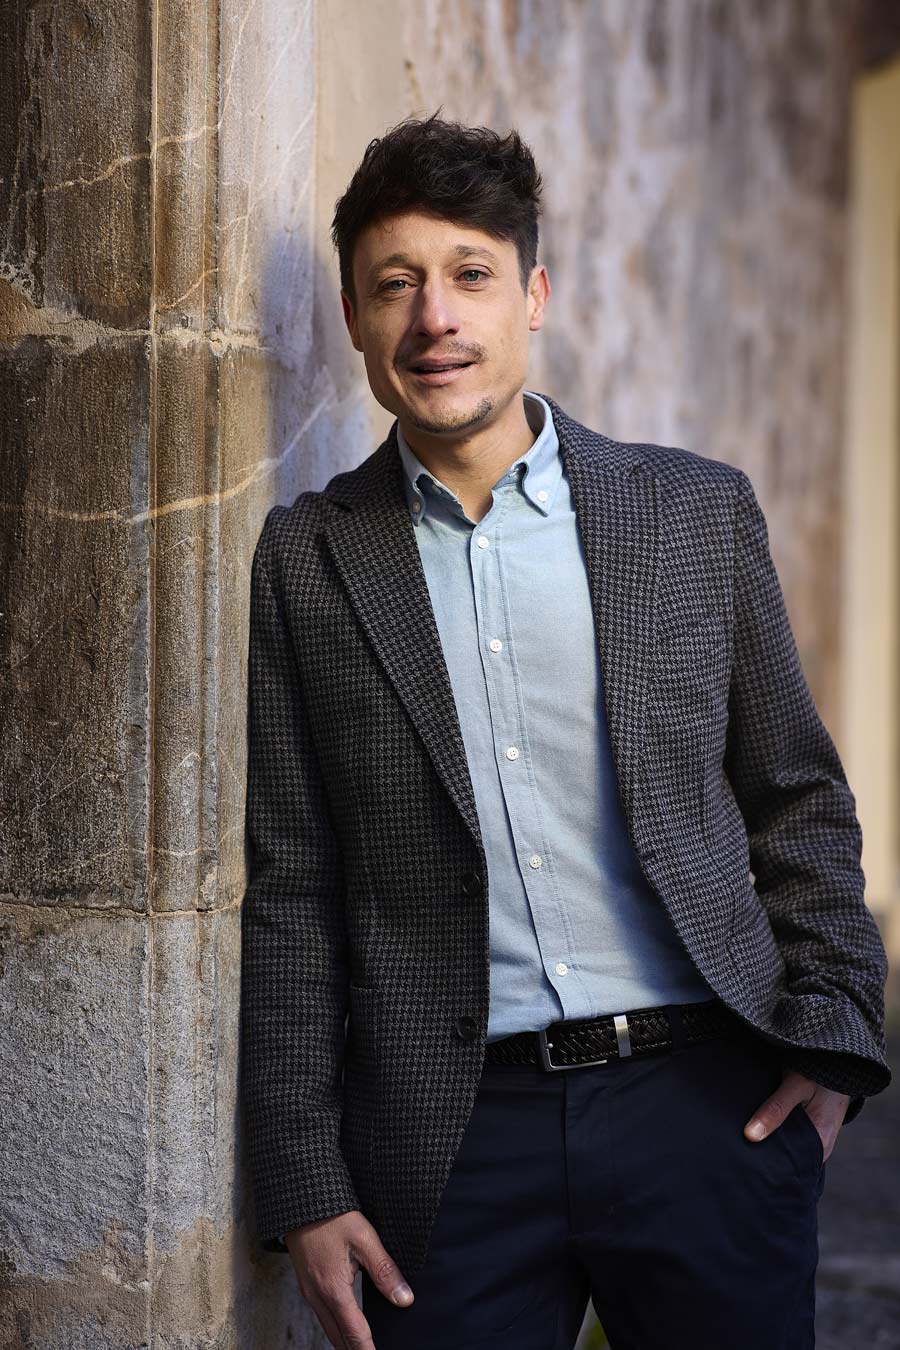 Mario Martínez, consultor de La Rioja de branding, derechos humanos y impacto social